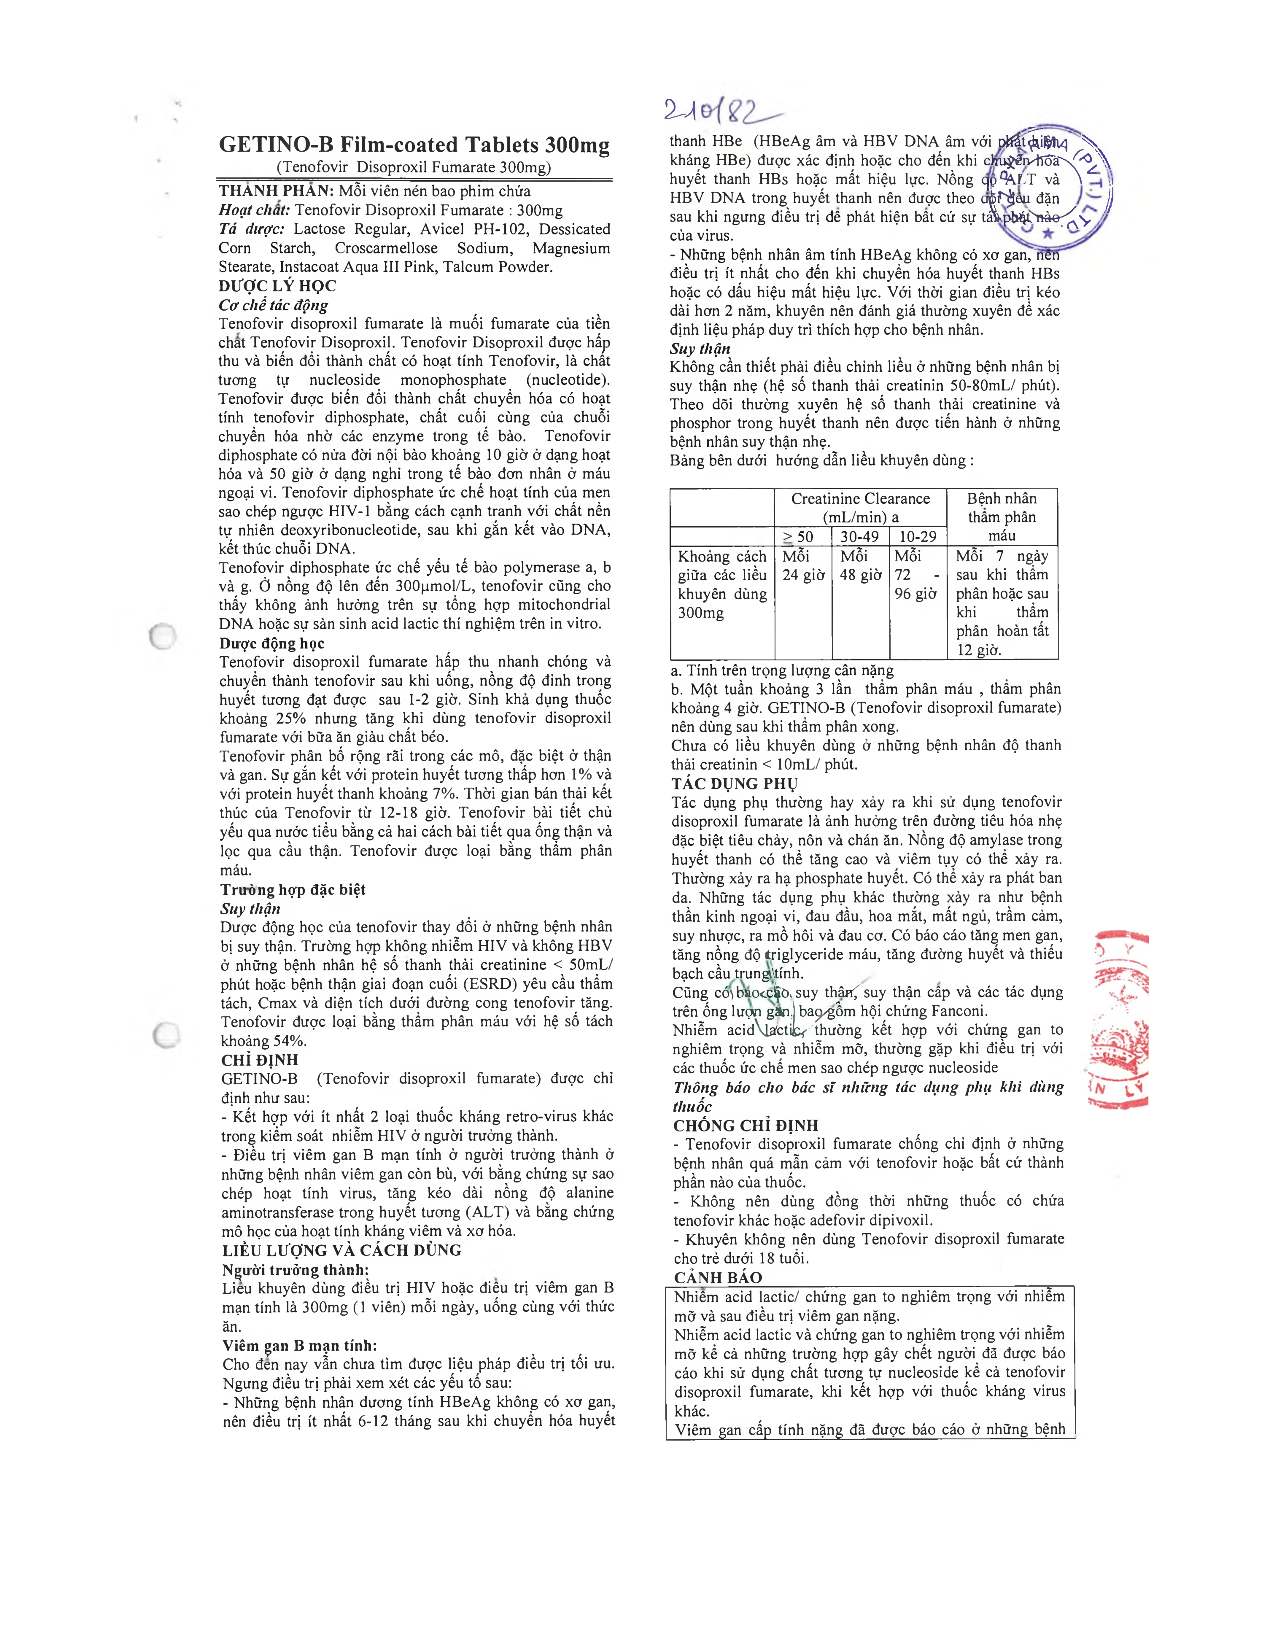 Hướng dẫn sử dụng Getino-B 300mg trang 1